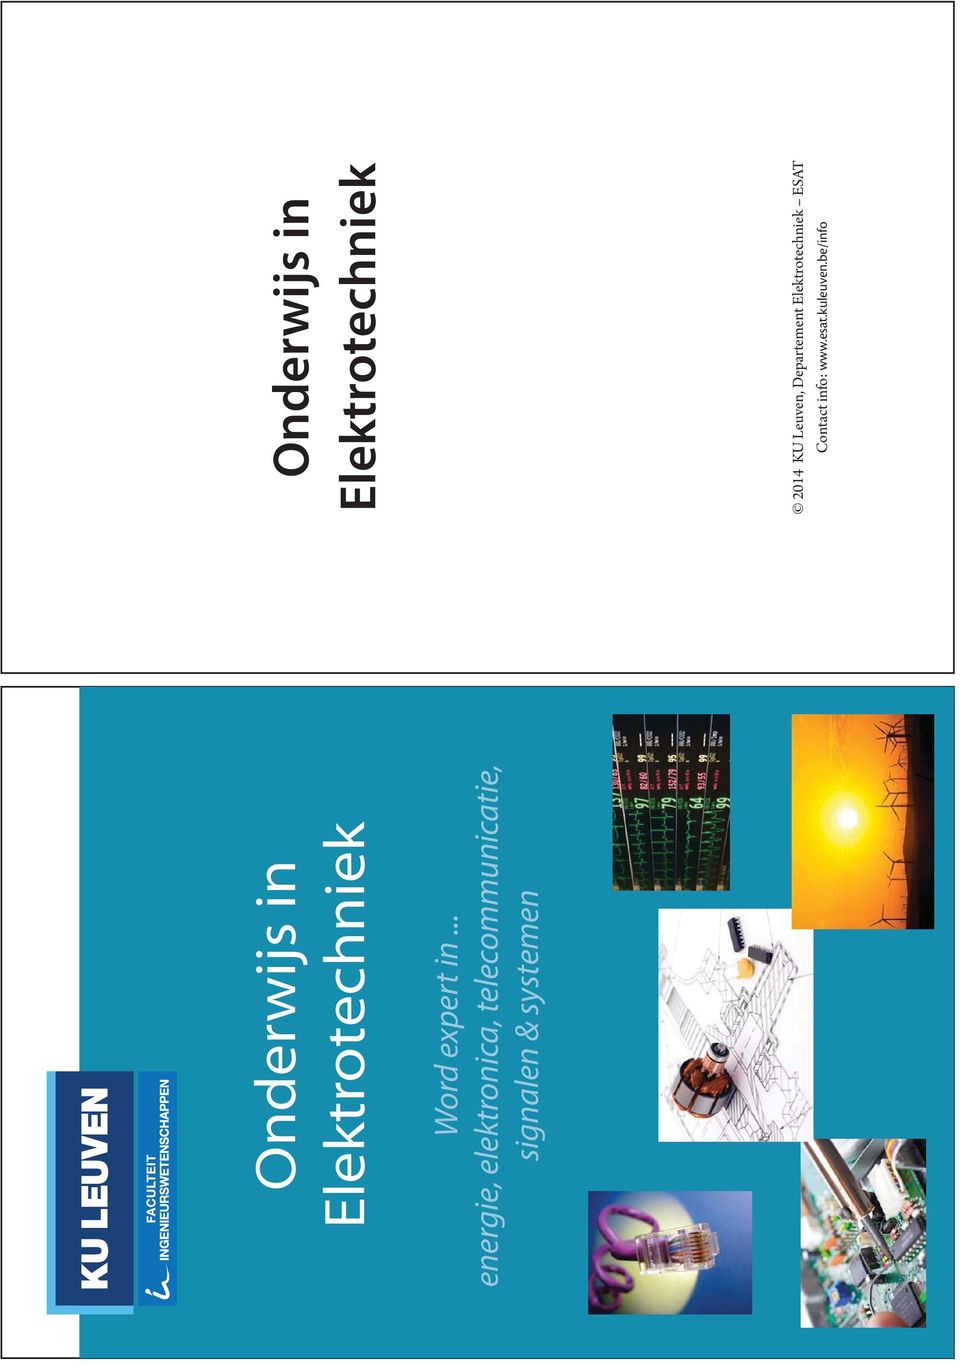 systemen Onderwijs in Elektrotechniek 2014 KU Leuven,